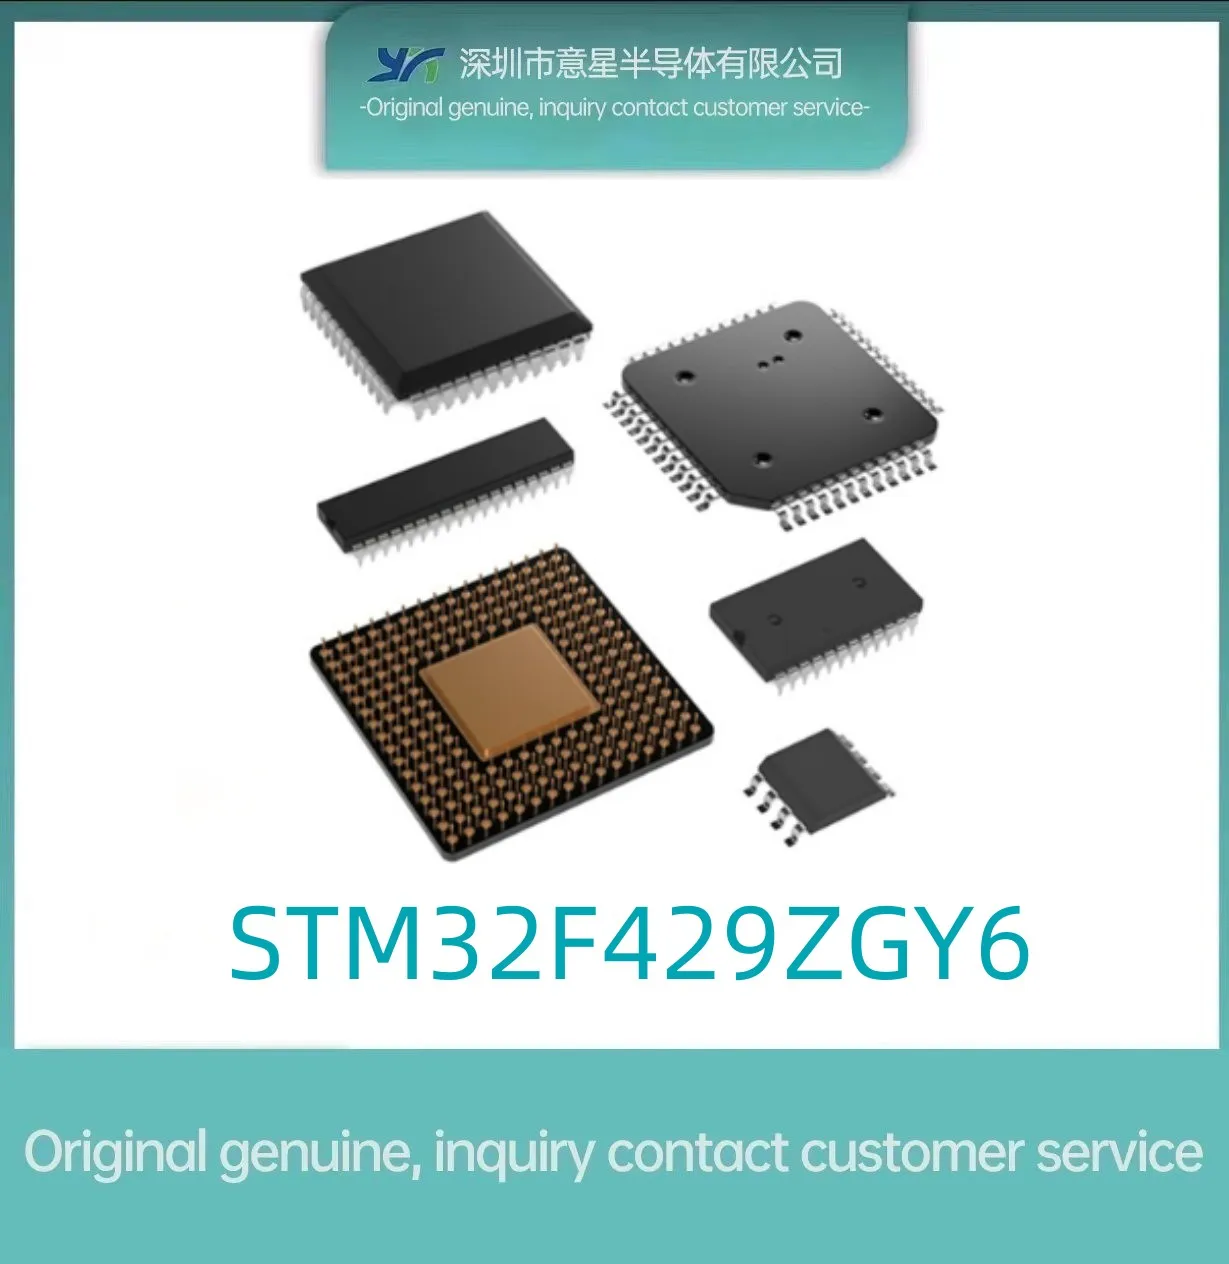 STM32F429ZGY6 Посылка LQFP144 в наличии новый микроконтроллер 429ZGY6 оригинальный аутентичный